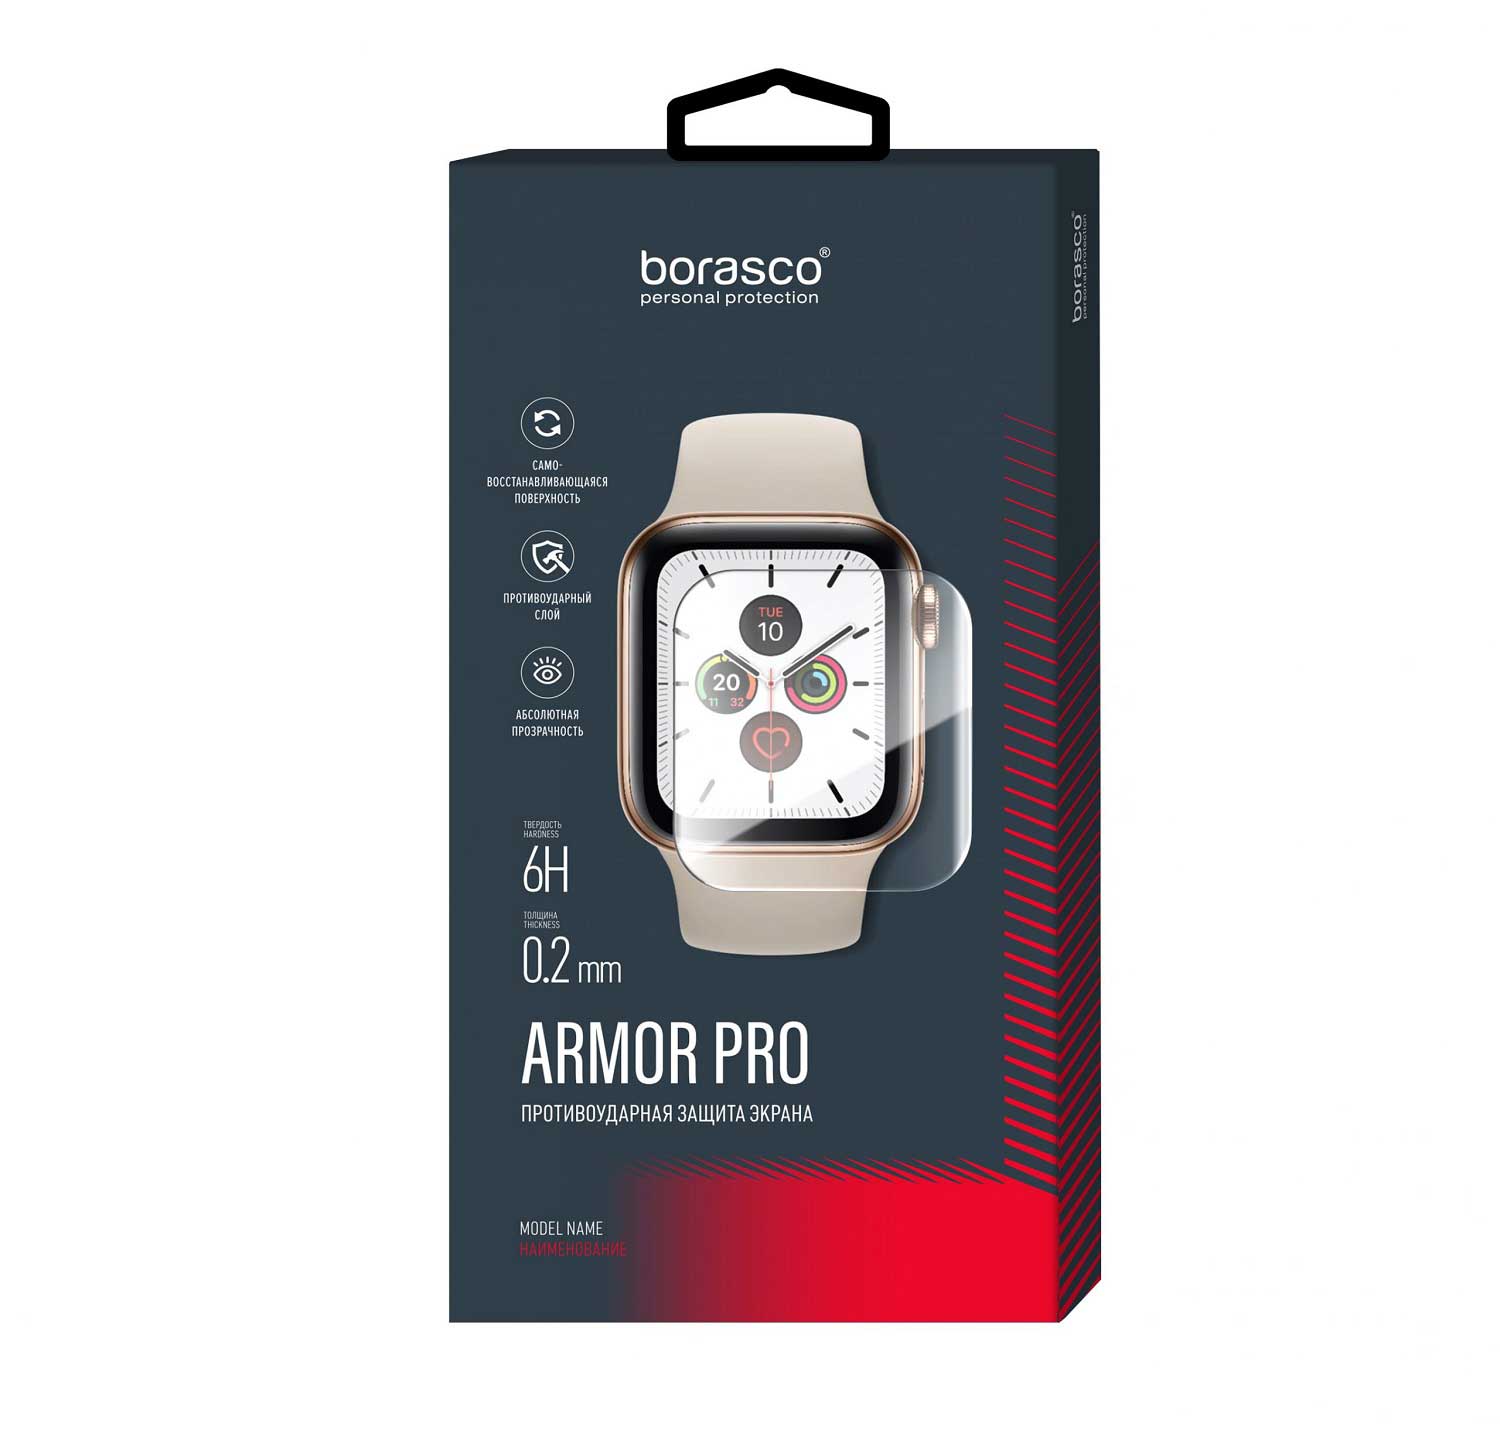 Защита экрана BoraSCO Armor Pro для Xiaomi Mi Band 2 матовый защита экрана borasco armor pro для xiaomi mi 9